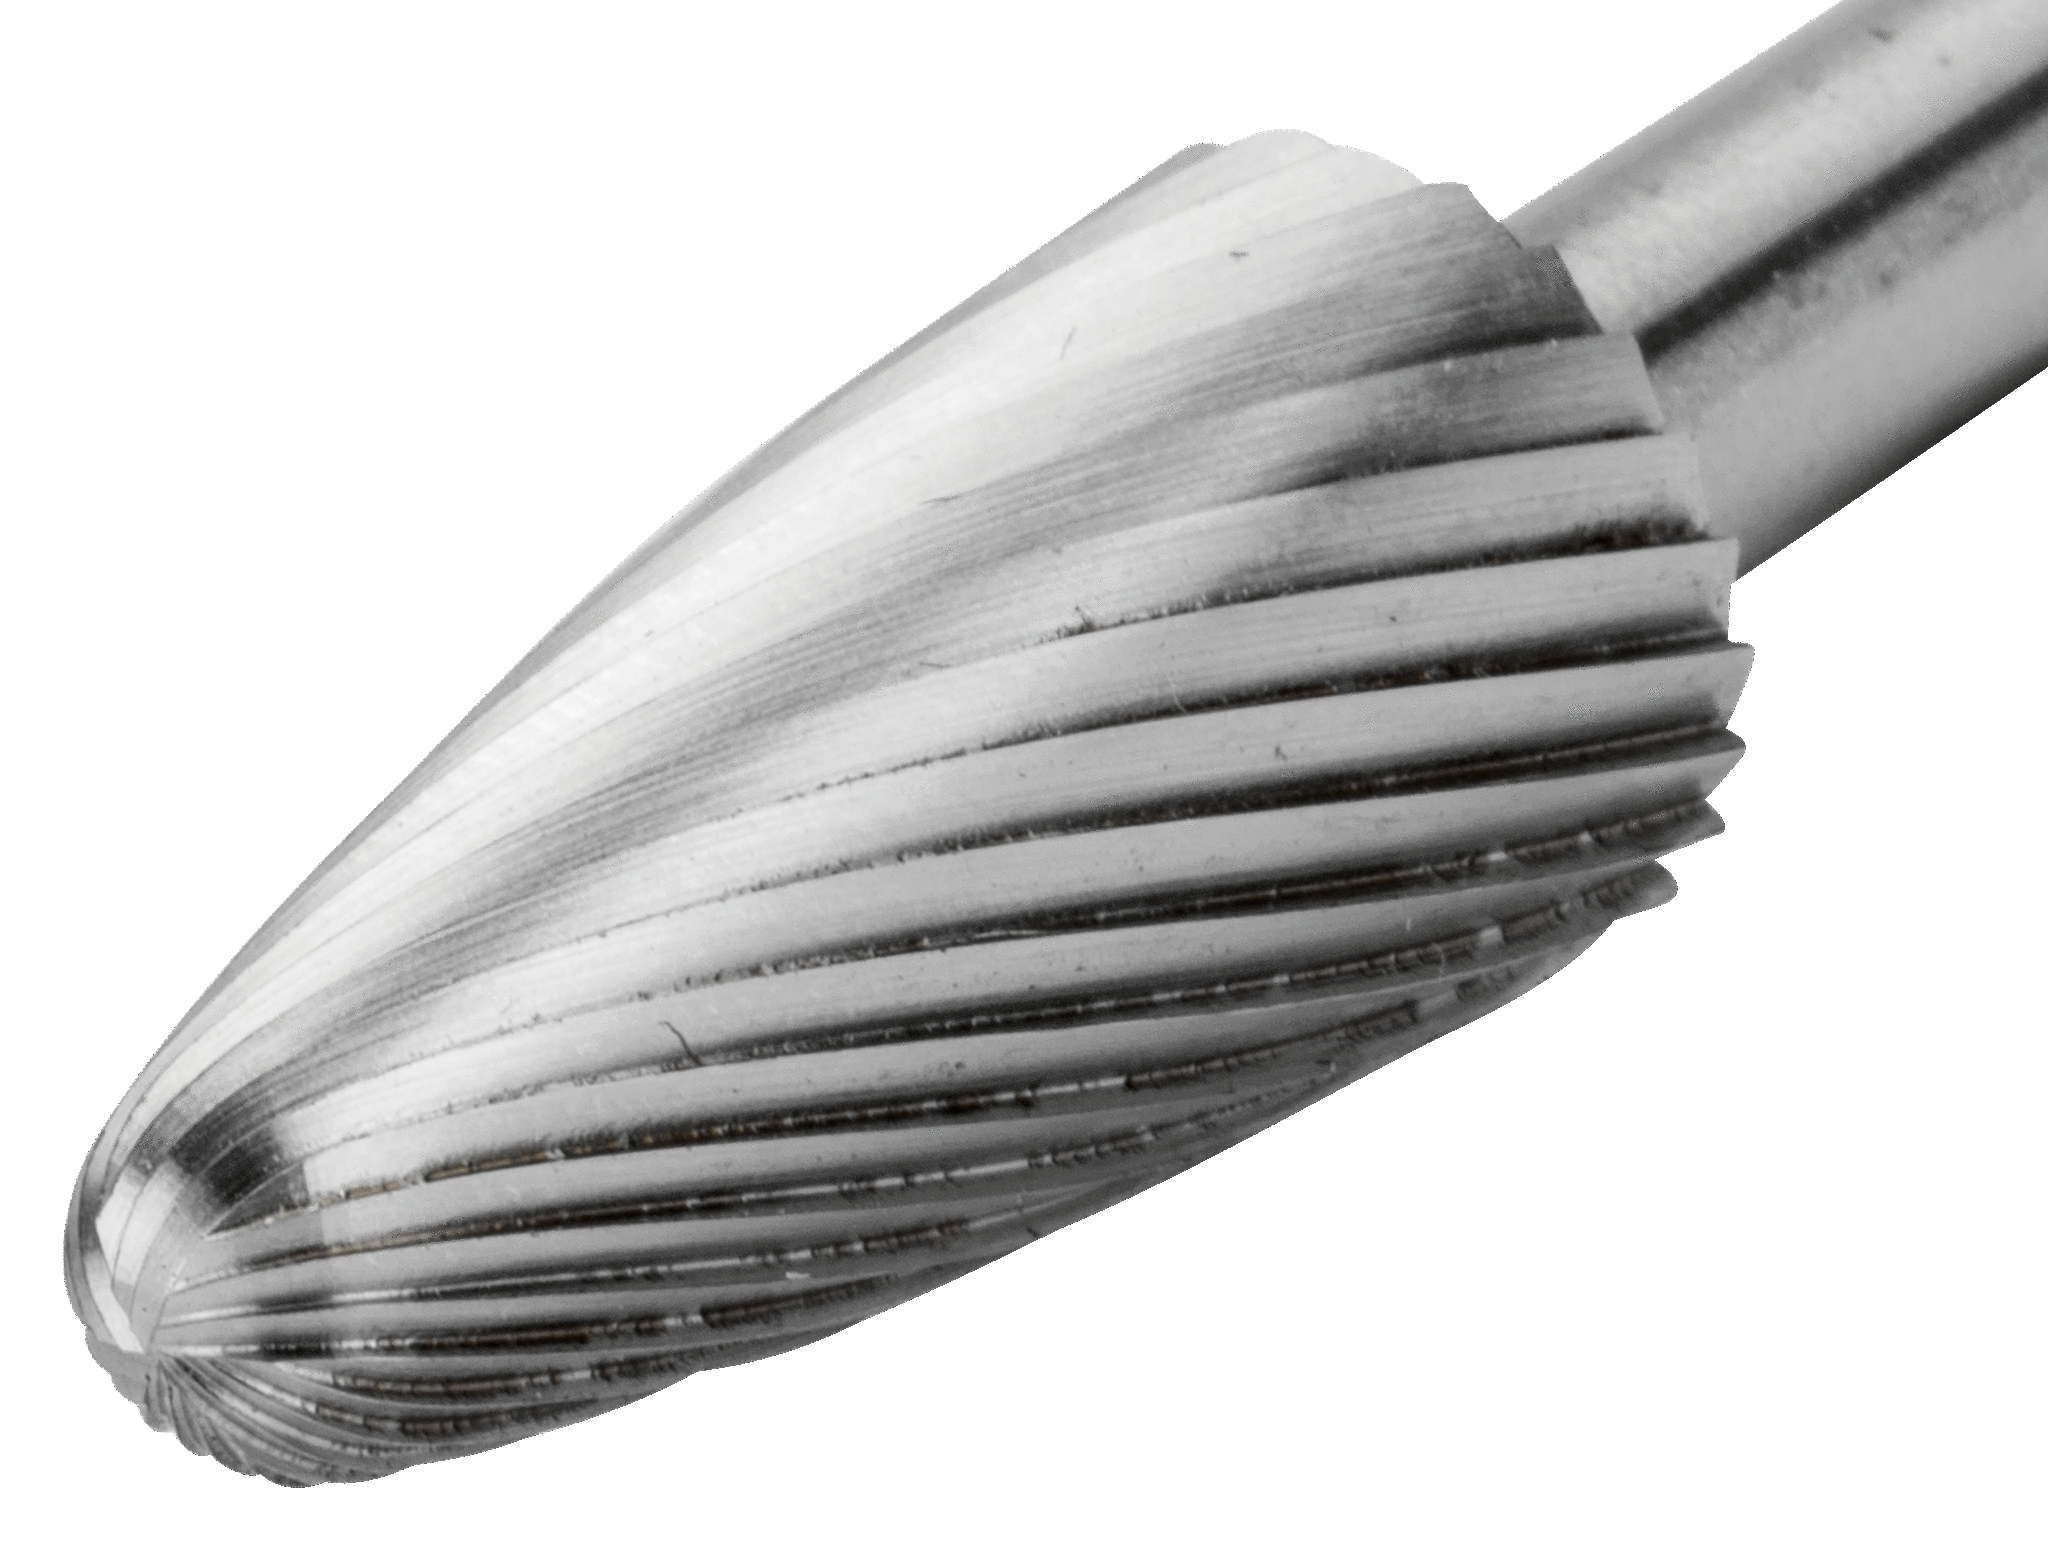 картинка Аркоподобная, скругленная, индивидуальная упаковка BAHCO HSSG-F0618M-S от магазина "Элит-инструмент"